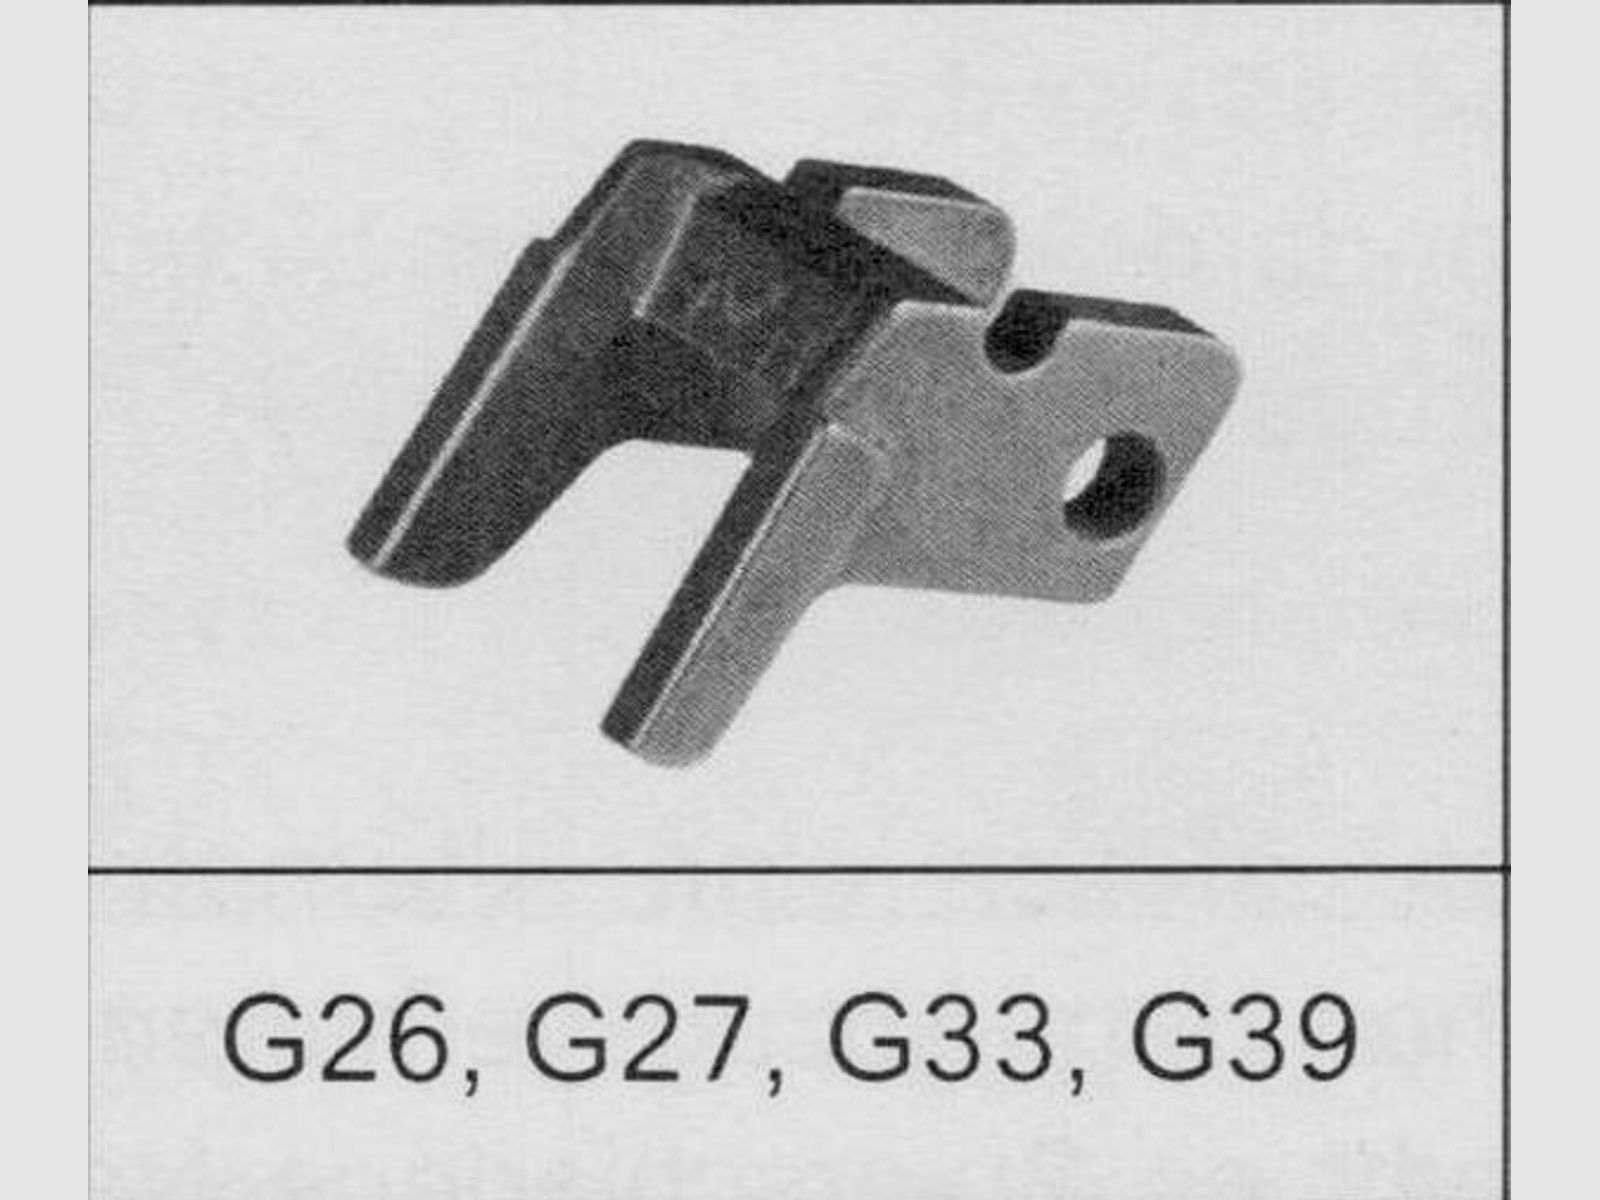 GLOCK Tuning/Ersatzteil f. Pistole Verriegelungsblock #22 Gen3/4 f. 26,27,33,39 u.a.